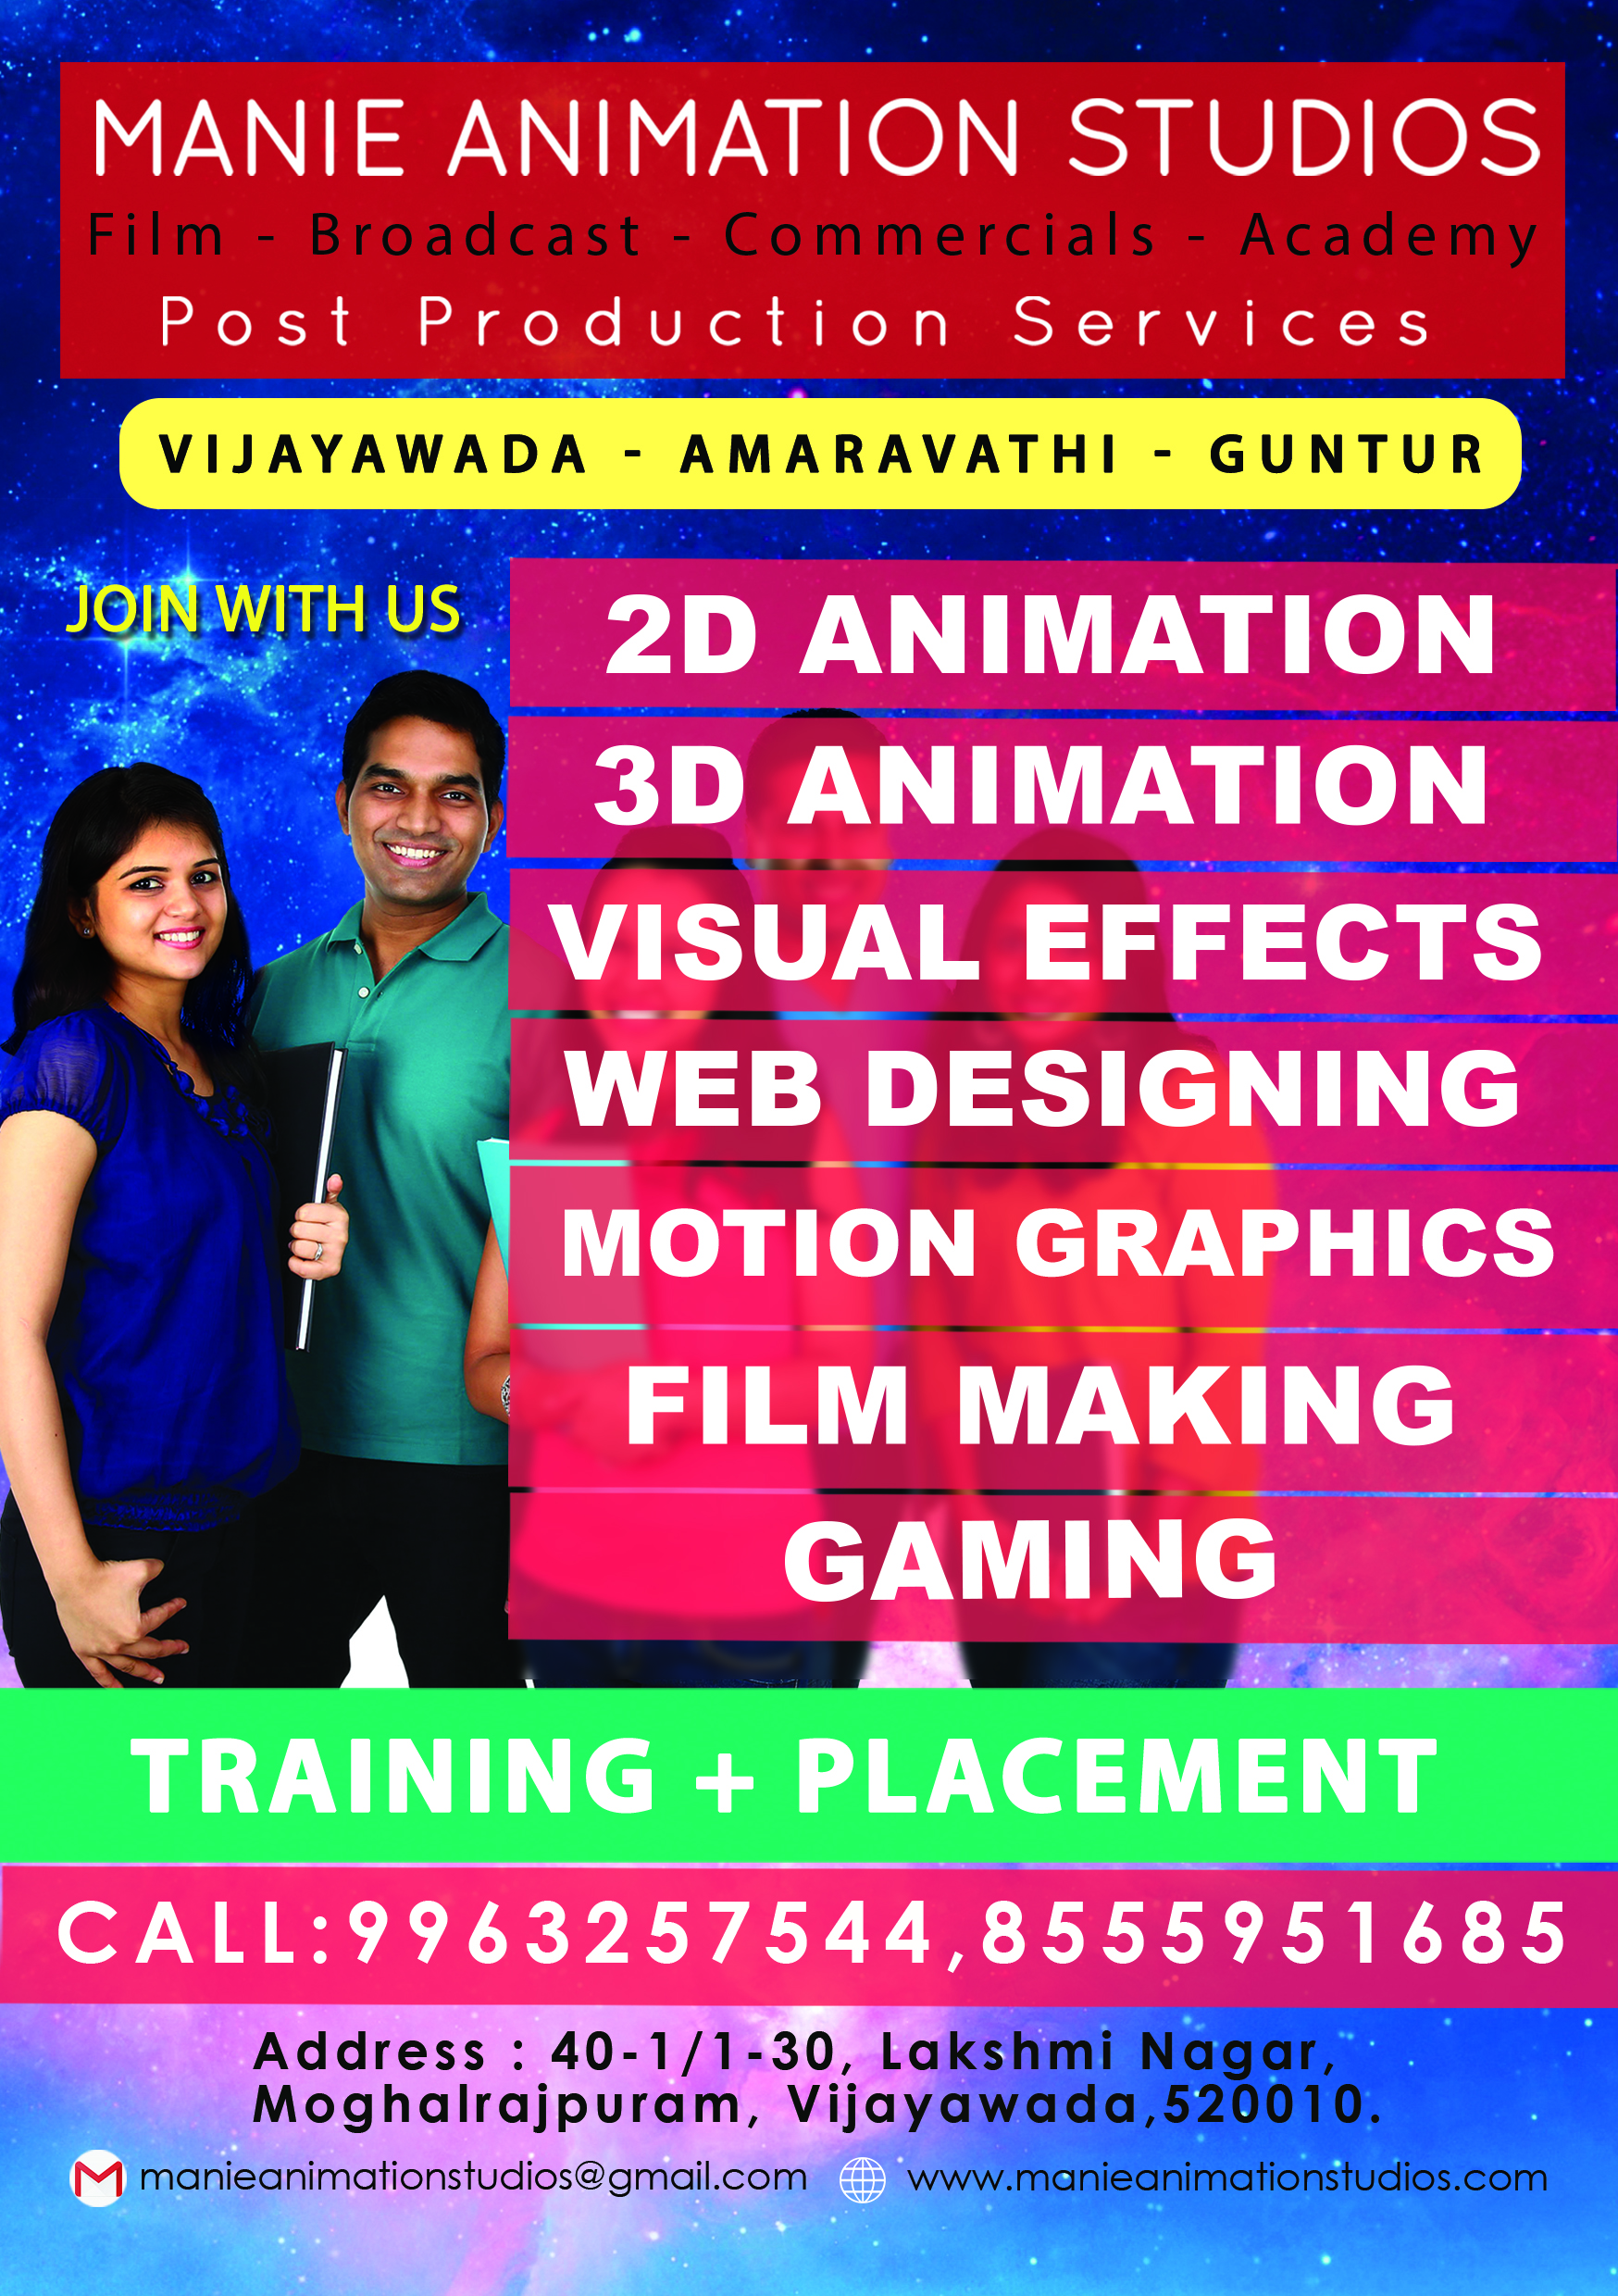 Manie Animation Studios in Vijaywada, Vijayawada-520010 | Sulekha Vijayawada